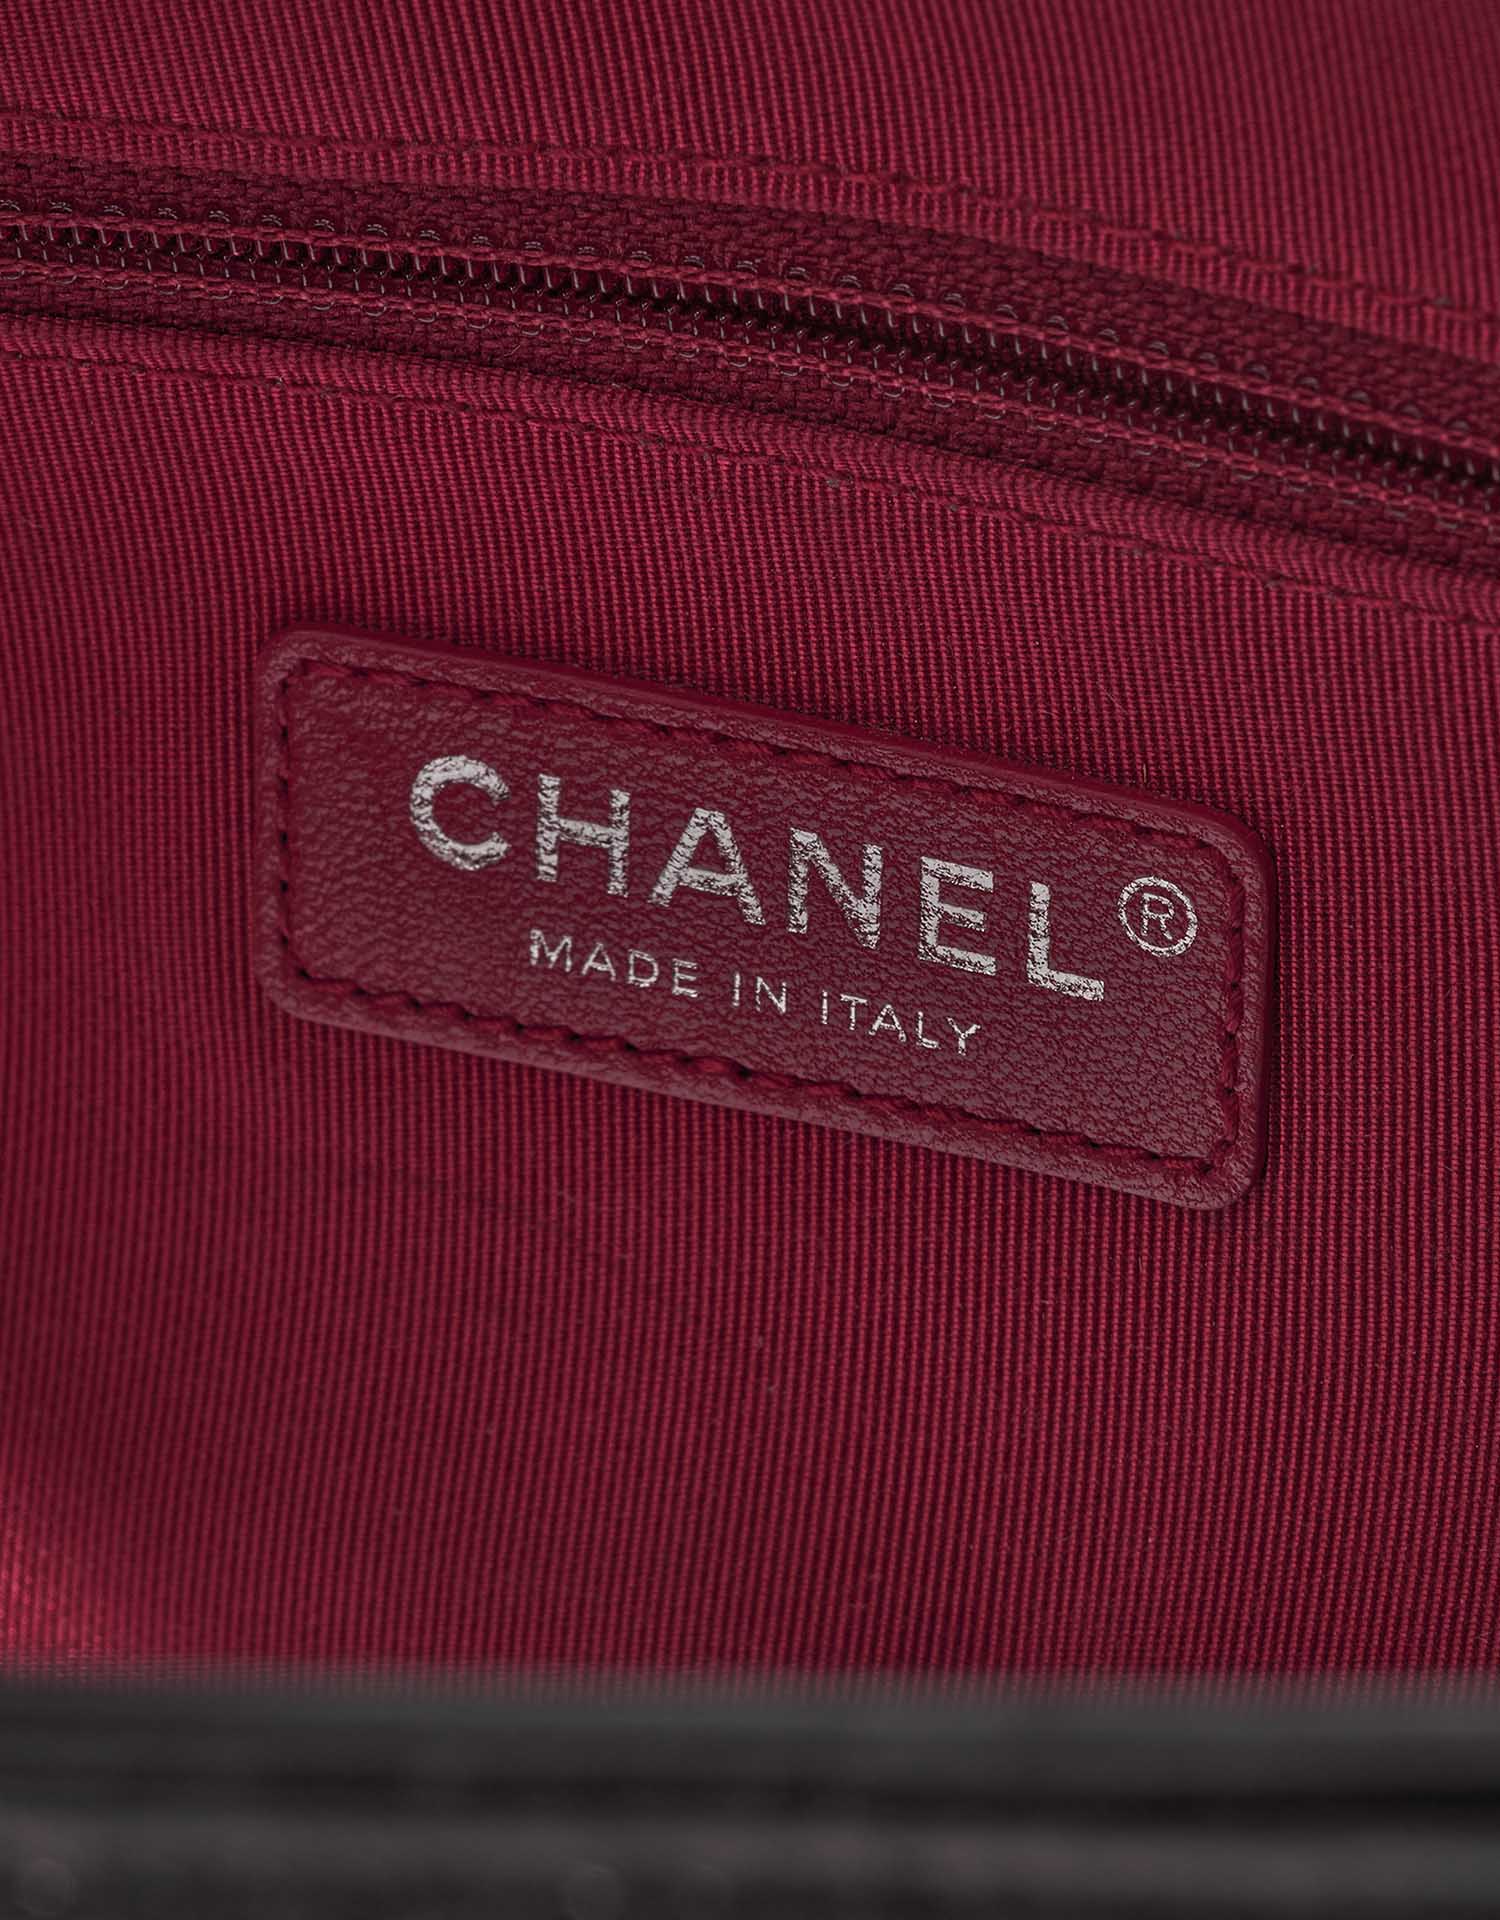 Chanel Gabrielle Medium Schwarz-Weiß Logo | Verkaufen Sie Ihre Designer-Tasche auf Saclab.com